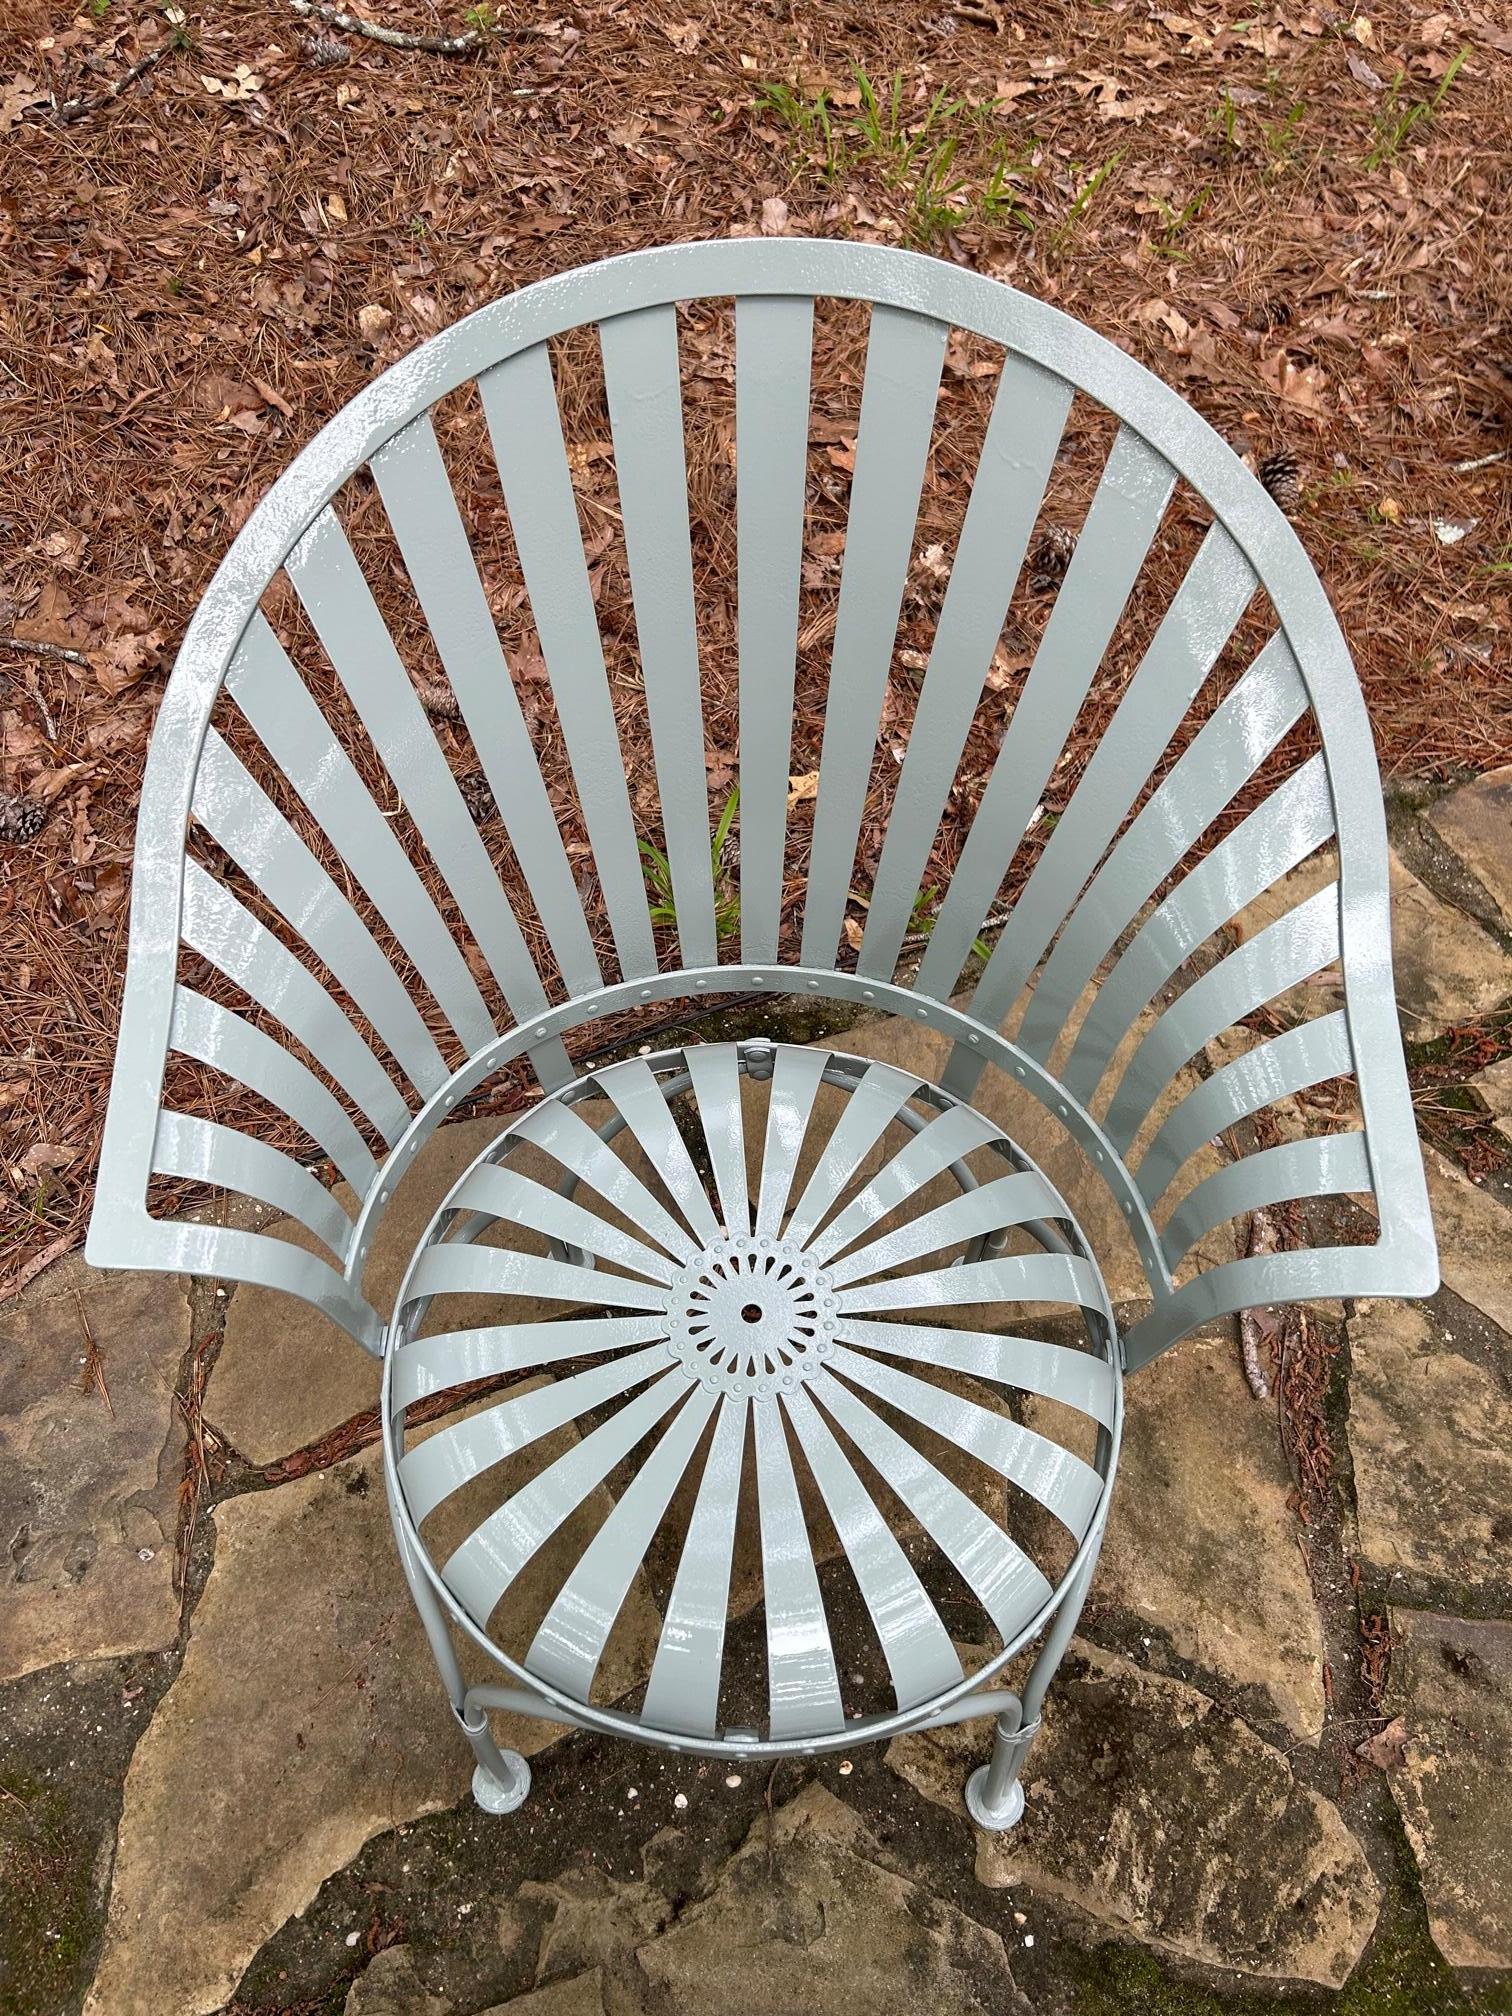 Chaise de jardin Fanback de Francois Carre restaurée.  Cette chaise a fait l'objet d'une restauration complète. Le processus a commencé par la remise à nu de chaque chaise. Ensuite, chaque ressort, raidisseur, retenue et rivet du fond du siège a été